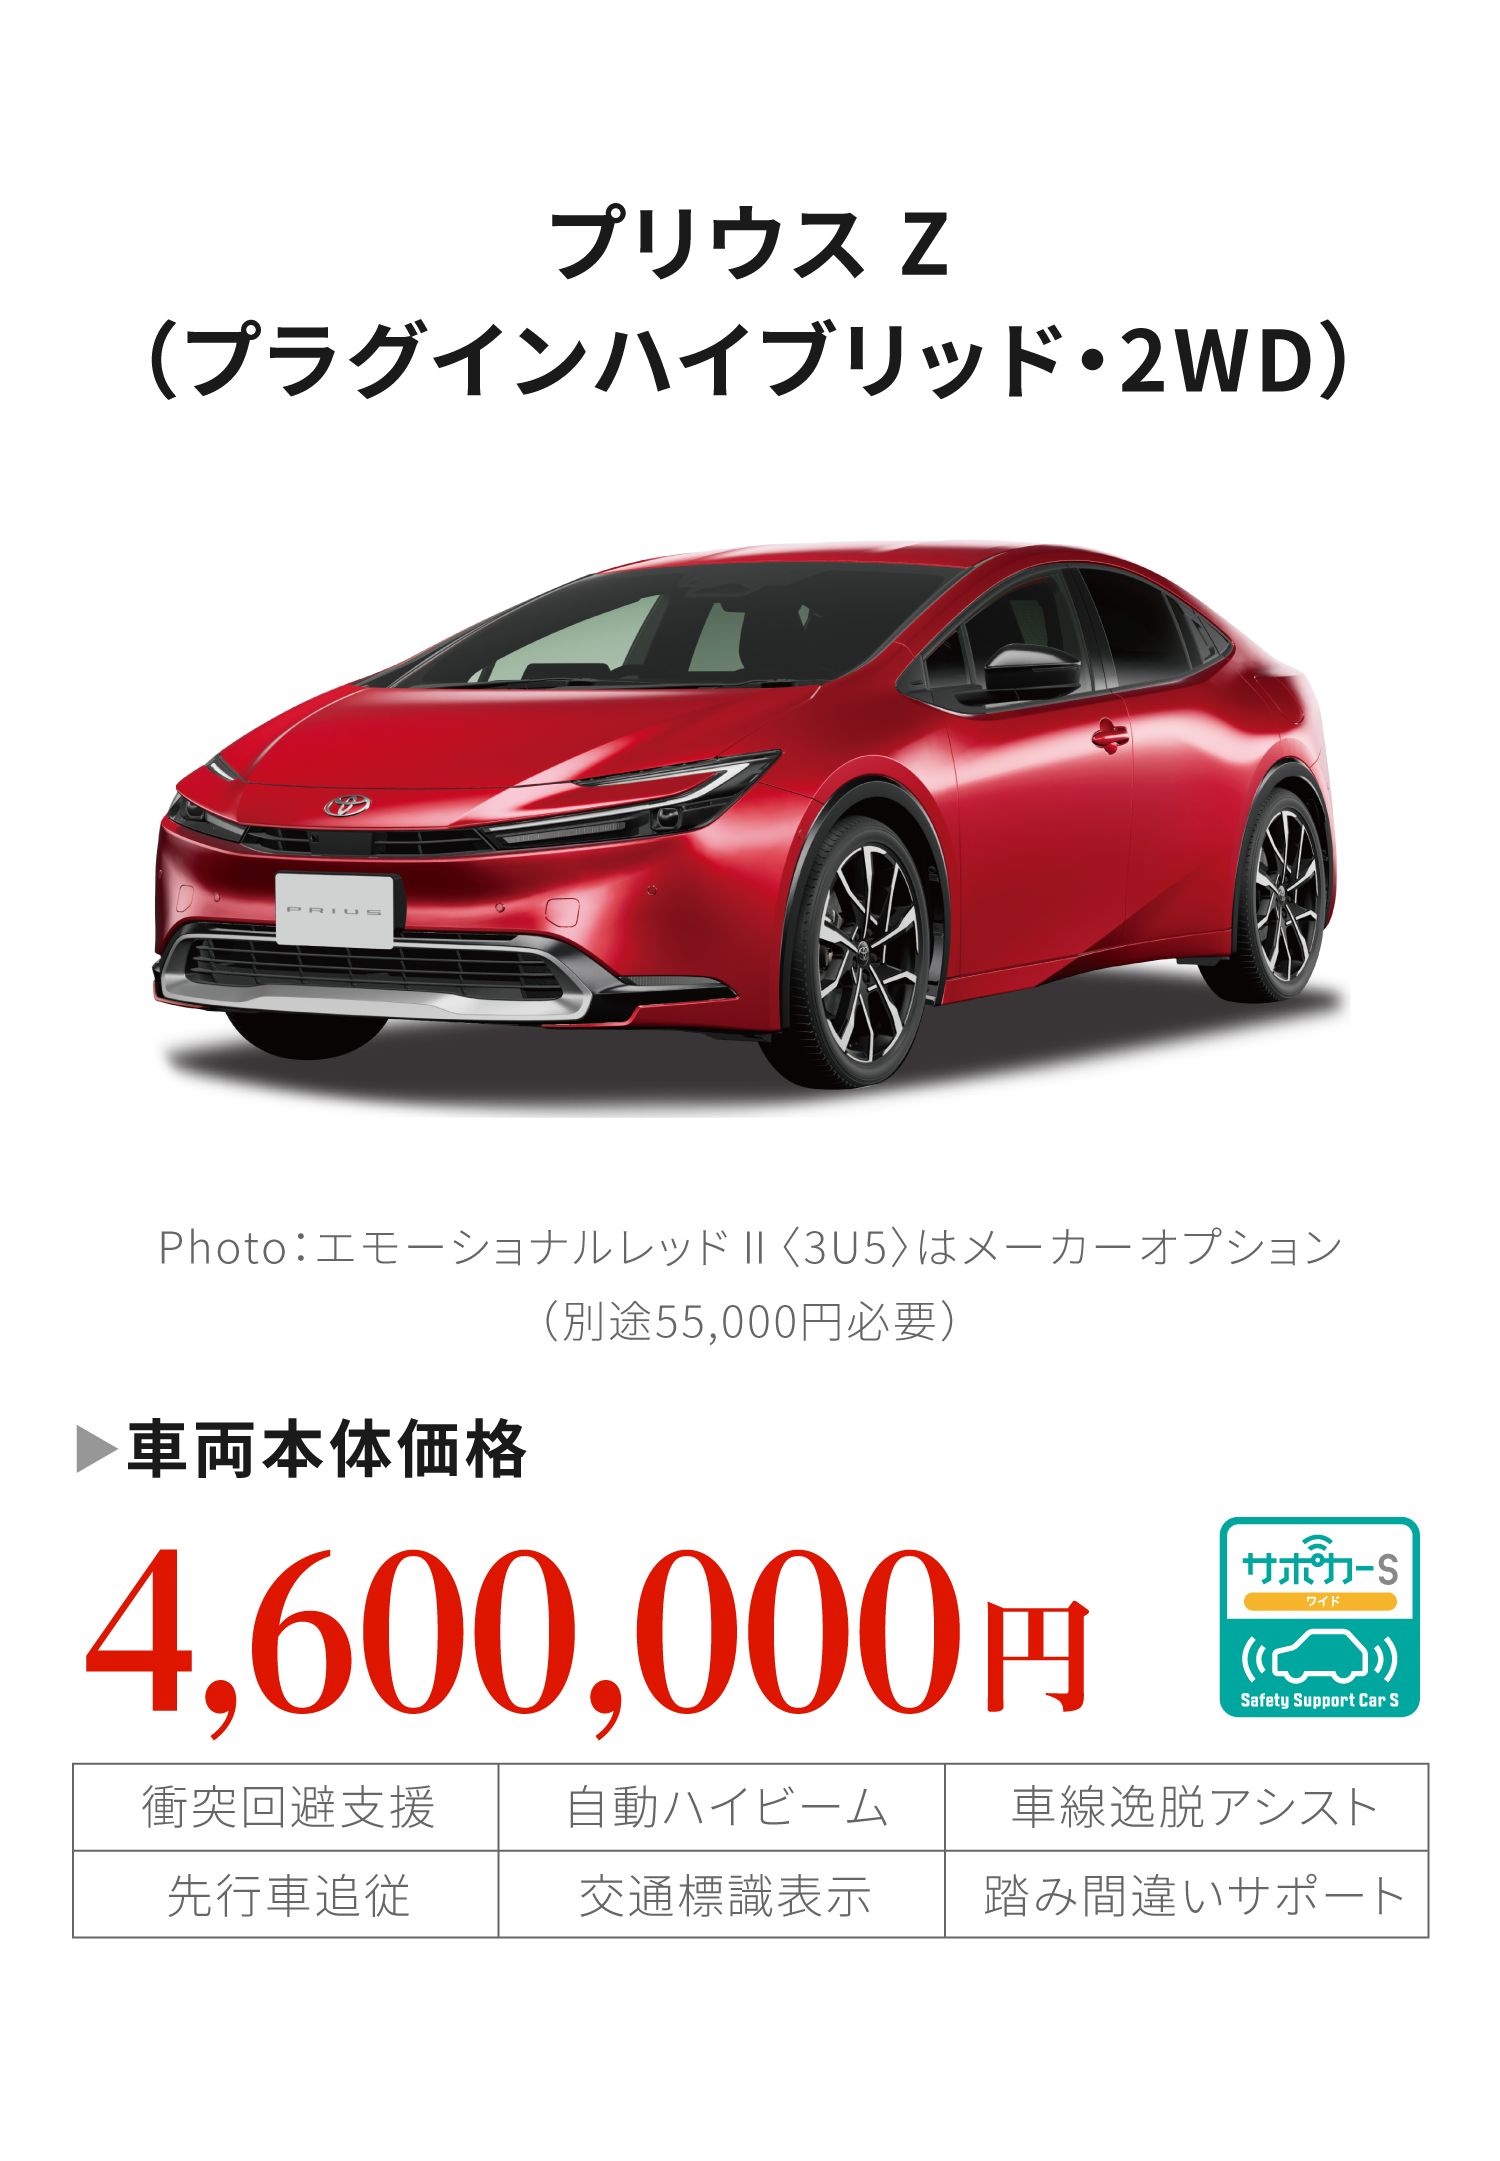 プリウス Z (プラグインハイブリッド・2WD)車両本体価格4,600,000円